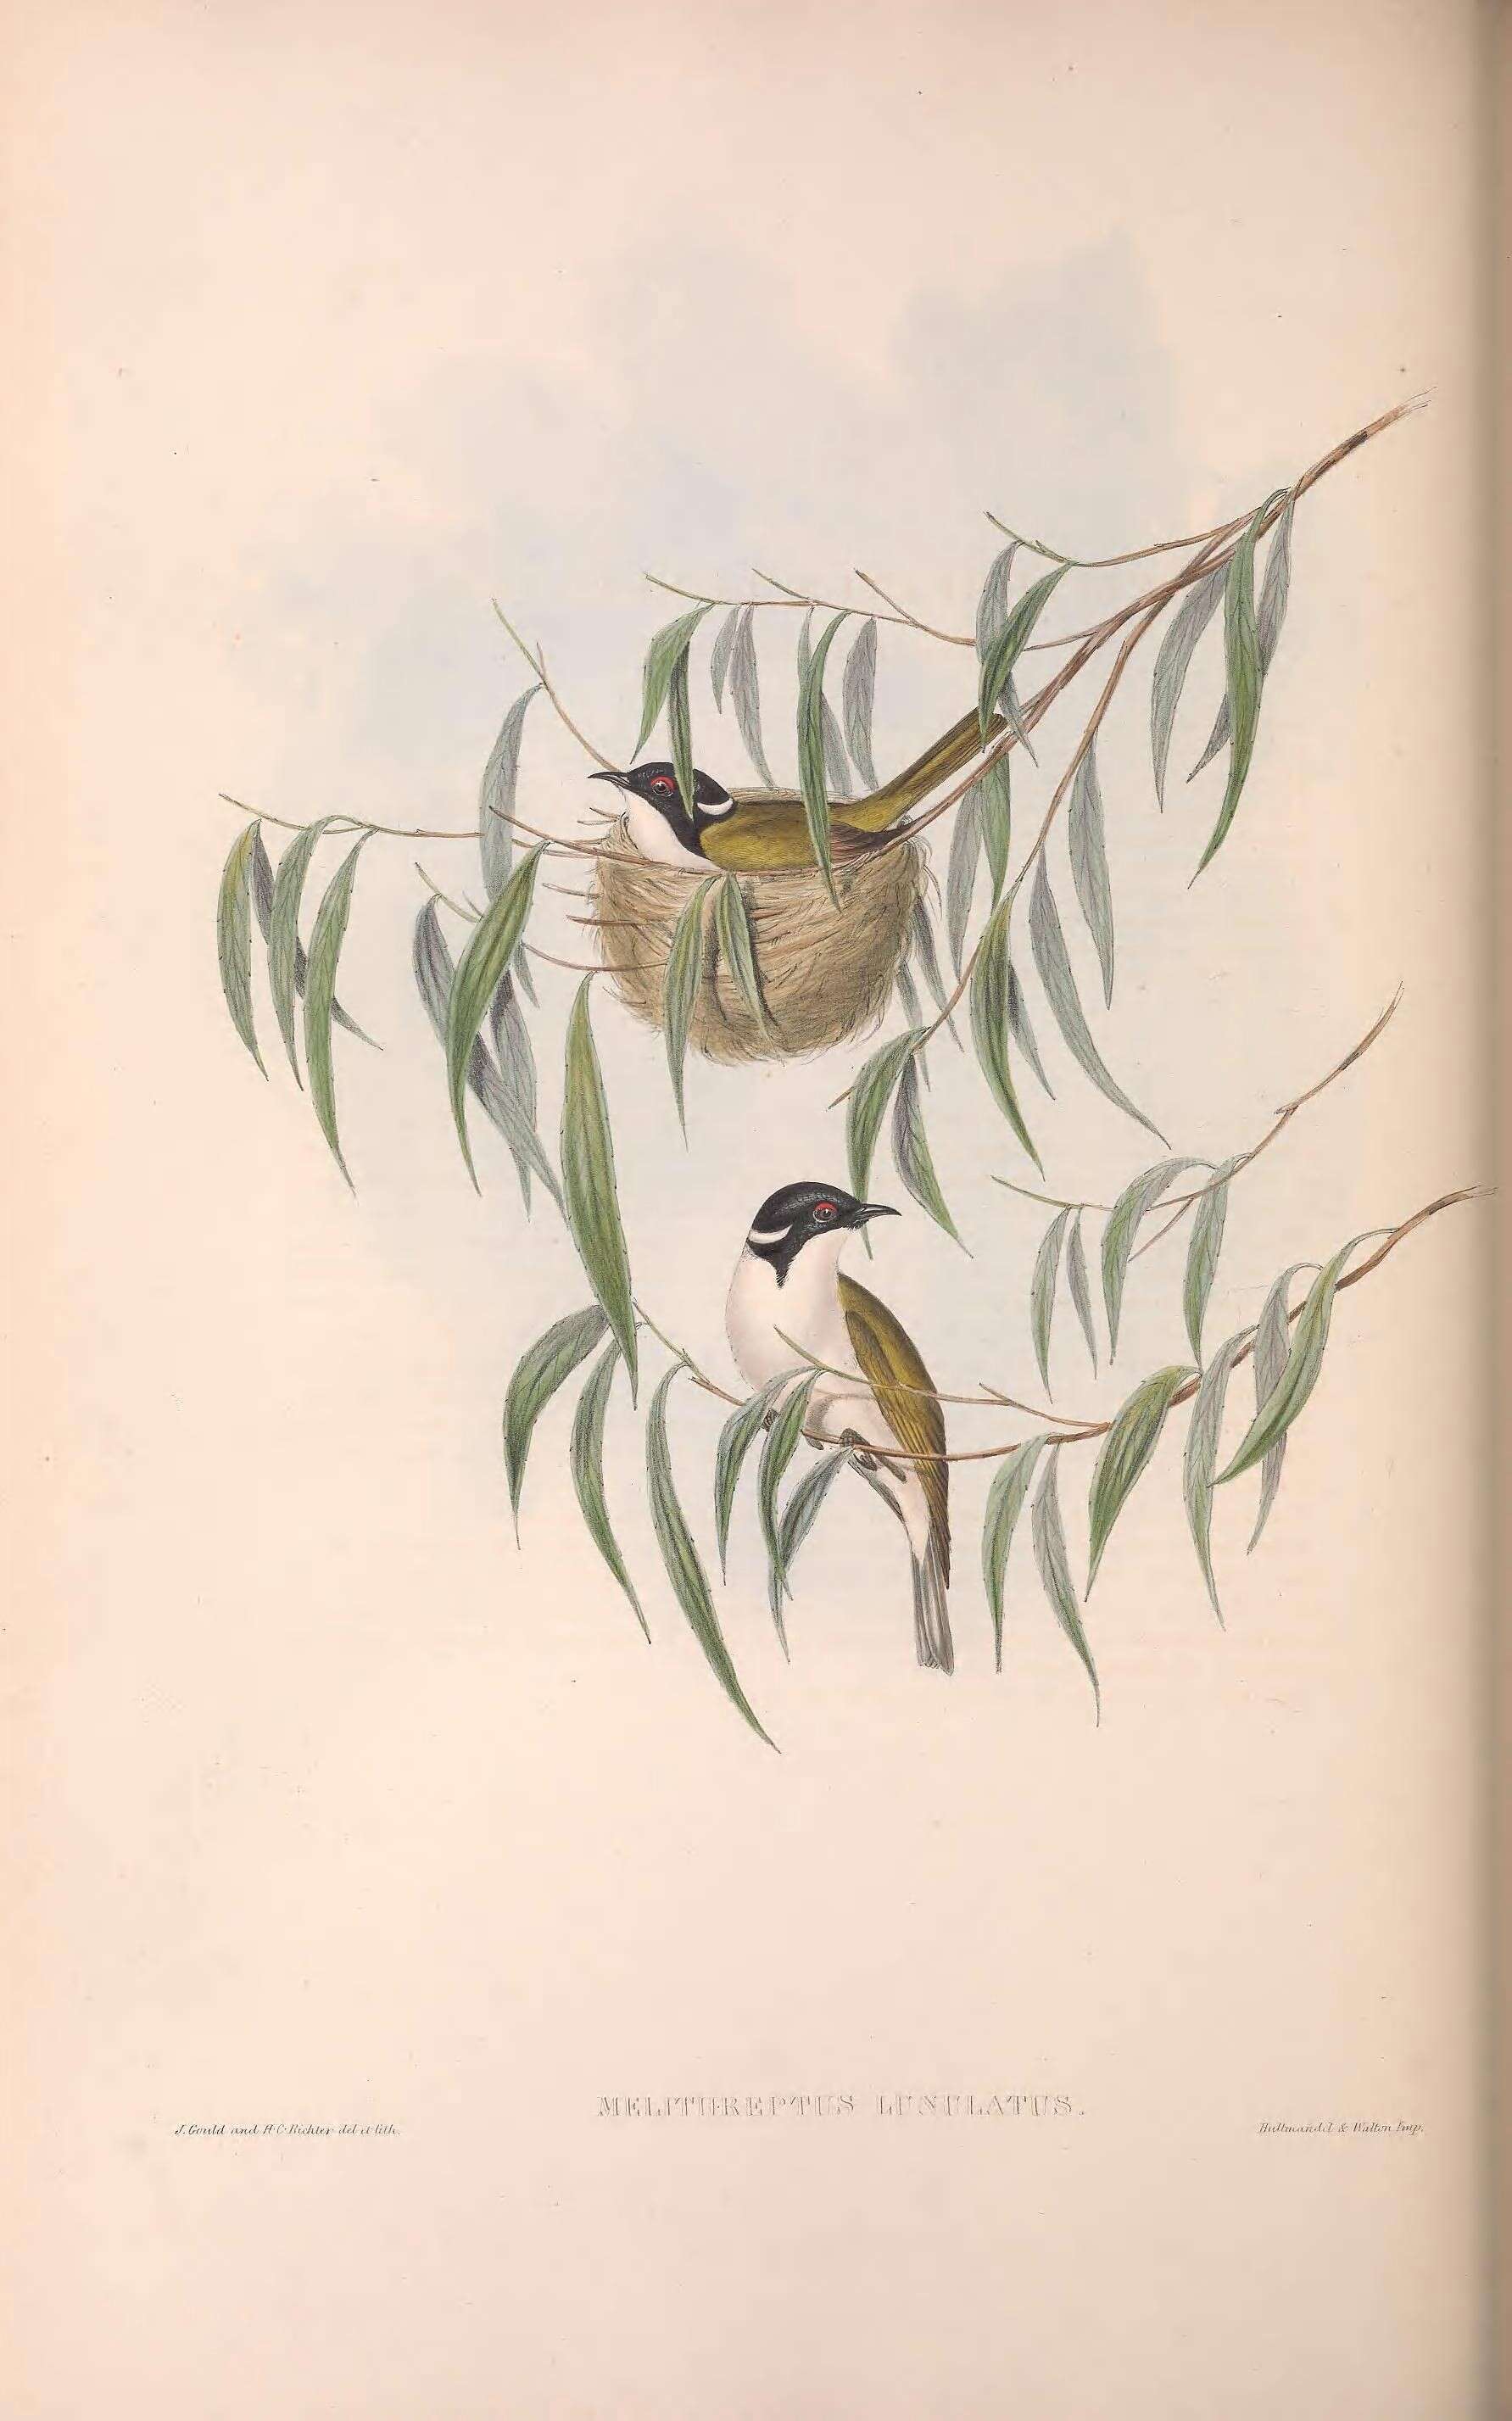 Image de Melithreptus Vieillot 1816